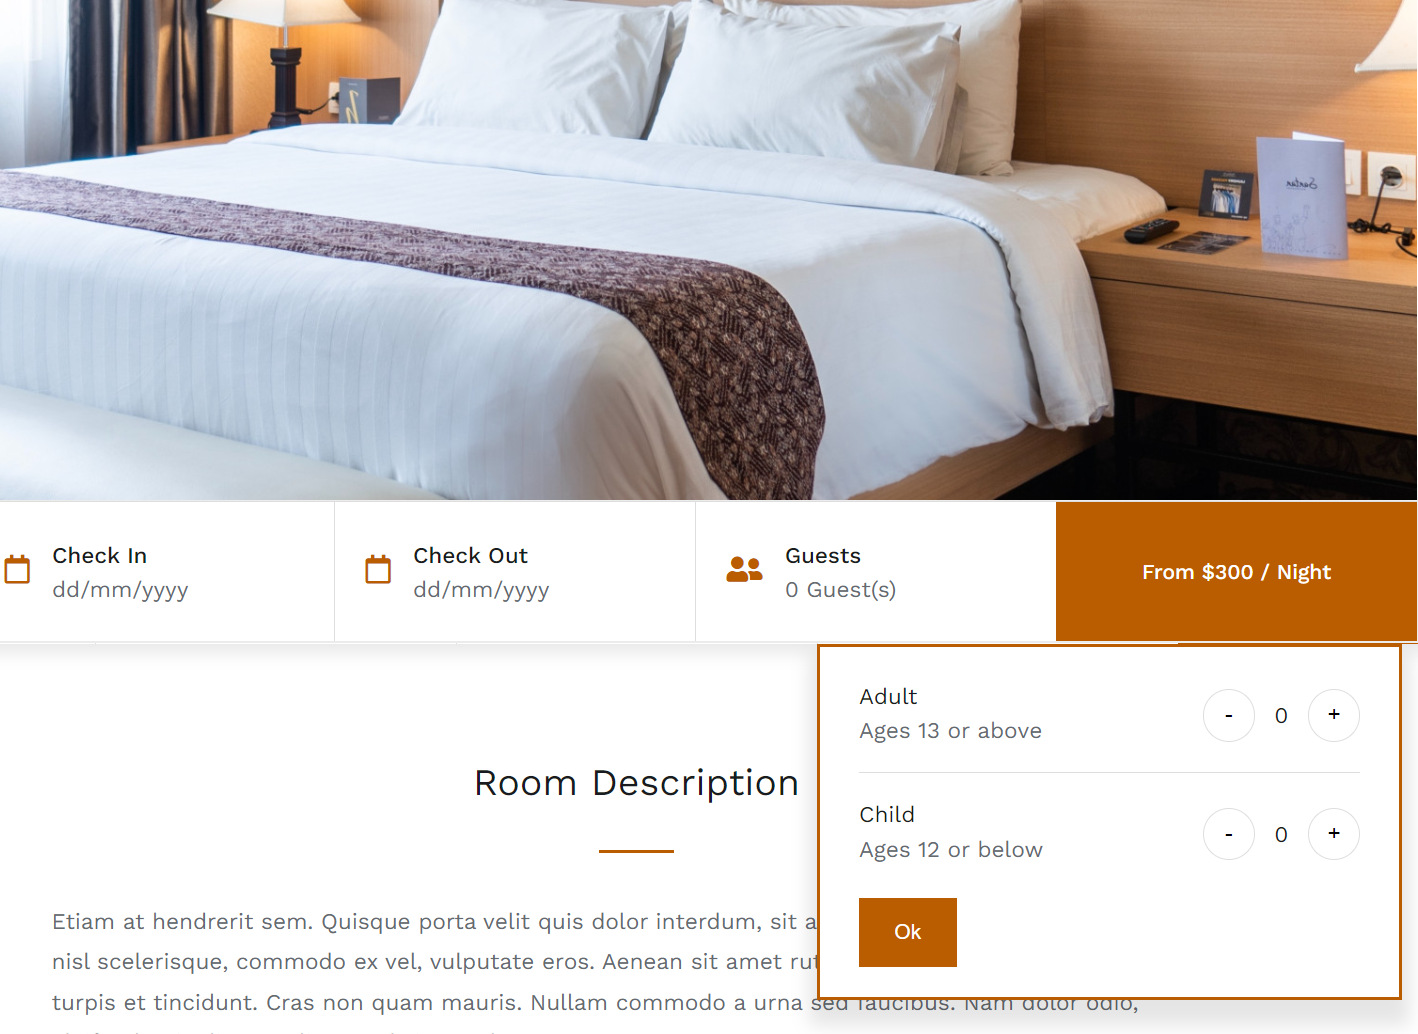 กำหนดราคาห้องพัก (Room Rates) : Hotel Booking ระบบจองห้องพีก จองโรงแรม ช่วยคุณราคาตามประเภทผู้เข้าพัก (Guest Classes) ช่วยให้คุณกำหนดราคาที่แตกต่างกันตามประเภทของผู้เข้าพัก เช่น ผู้ใหญ่ เด็ก สัตว์เลี้ยง ฯลฯ คุณสามารถสร้างประเภทผู้เข้าพัก หรือ Guest Classes ได้มากเท่าที่คุณต้องการ และคุณยังสามารถกำหนด จำนวนวันเข้าพักขั้นต่ำและสูงสุด สำหรับผู้เข้าพัก